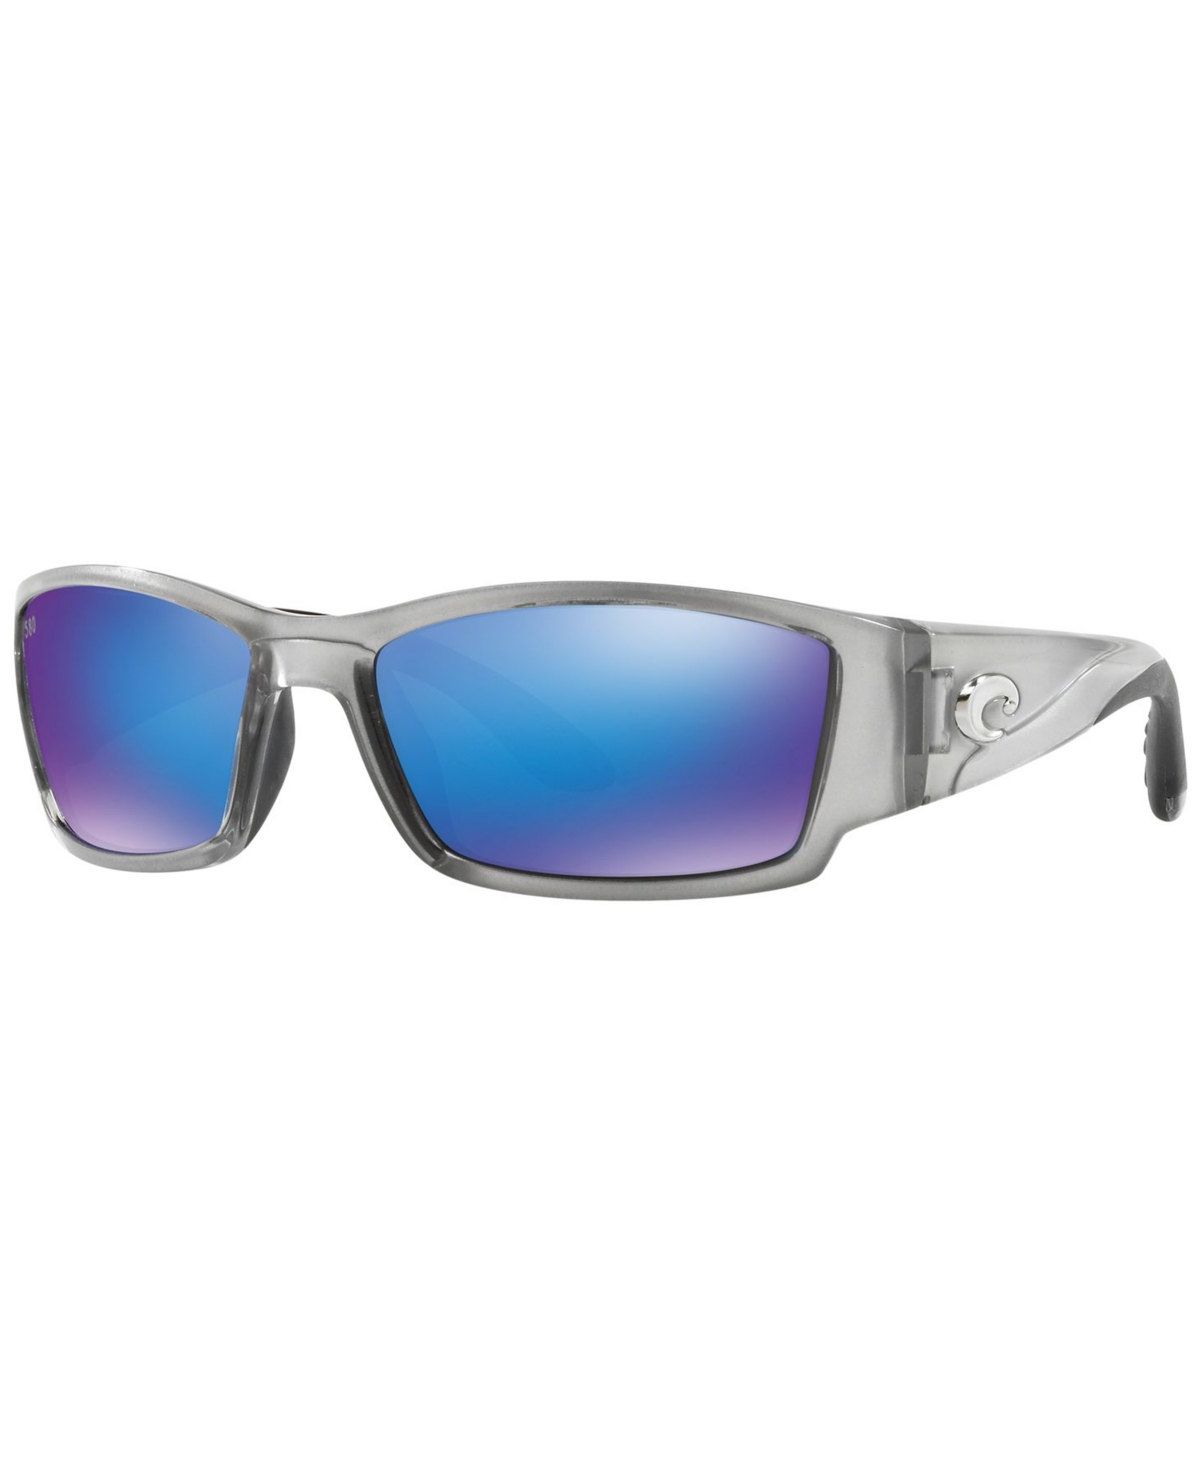 Costa Del Mar Polarized Sunglasses, Corbina 62 In Silver,blue Mir Pol